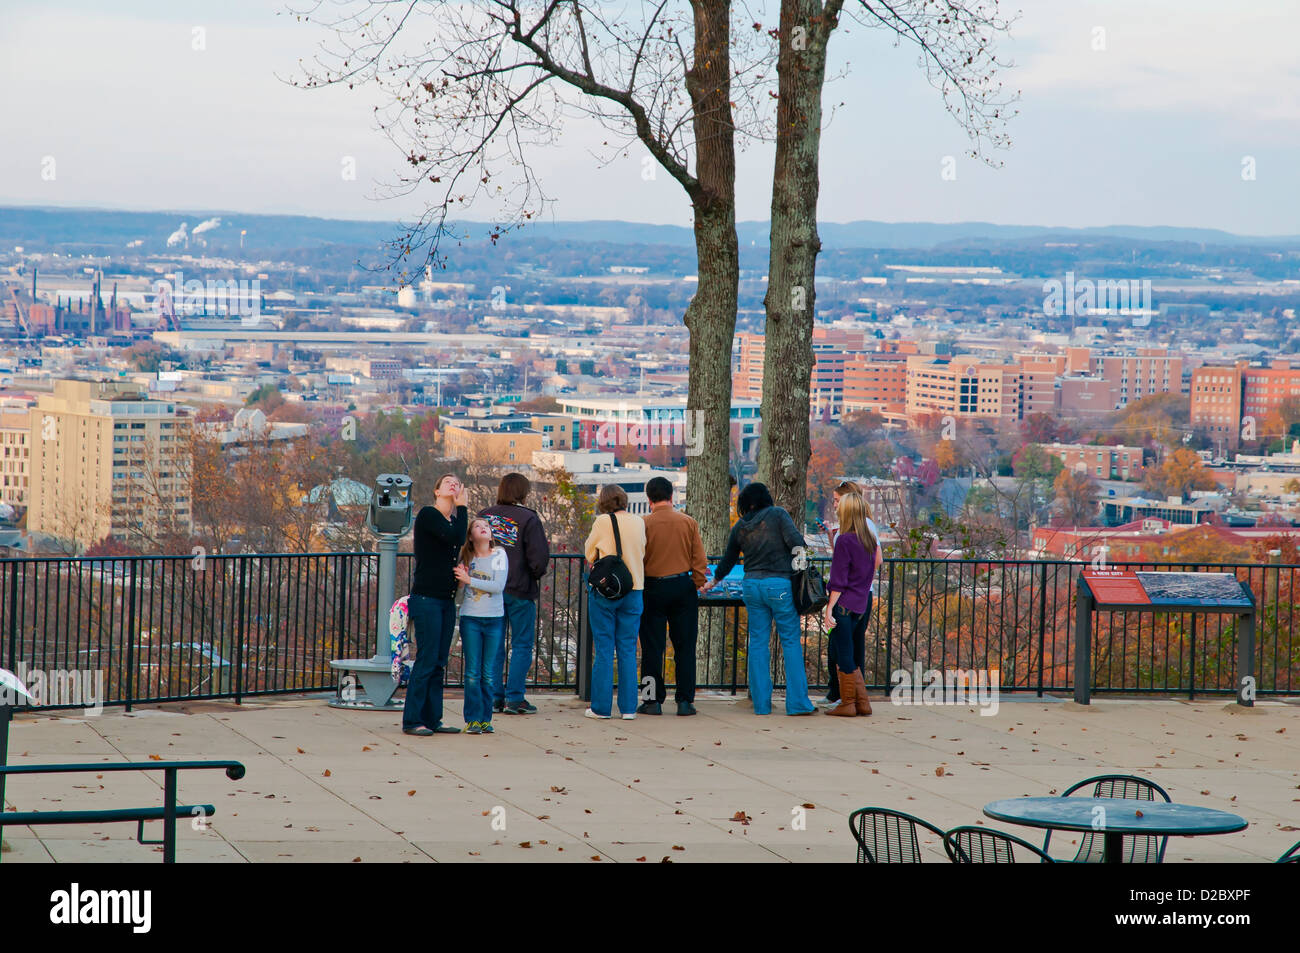 Un gruppo di turisti ammirando il panorama della città dalla Vulcan Park ,Birmingham, Alabama, Stati Uniti d'America, America del Nord Foto Stock